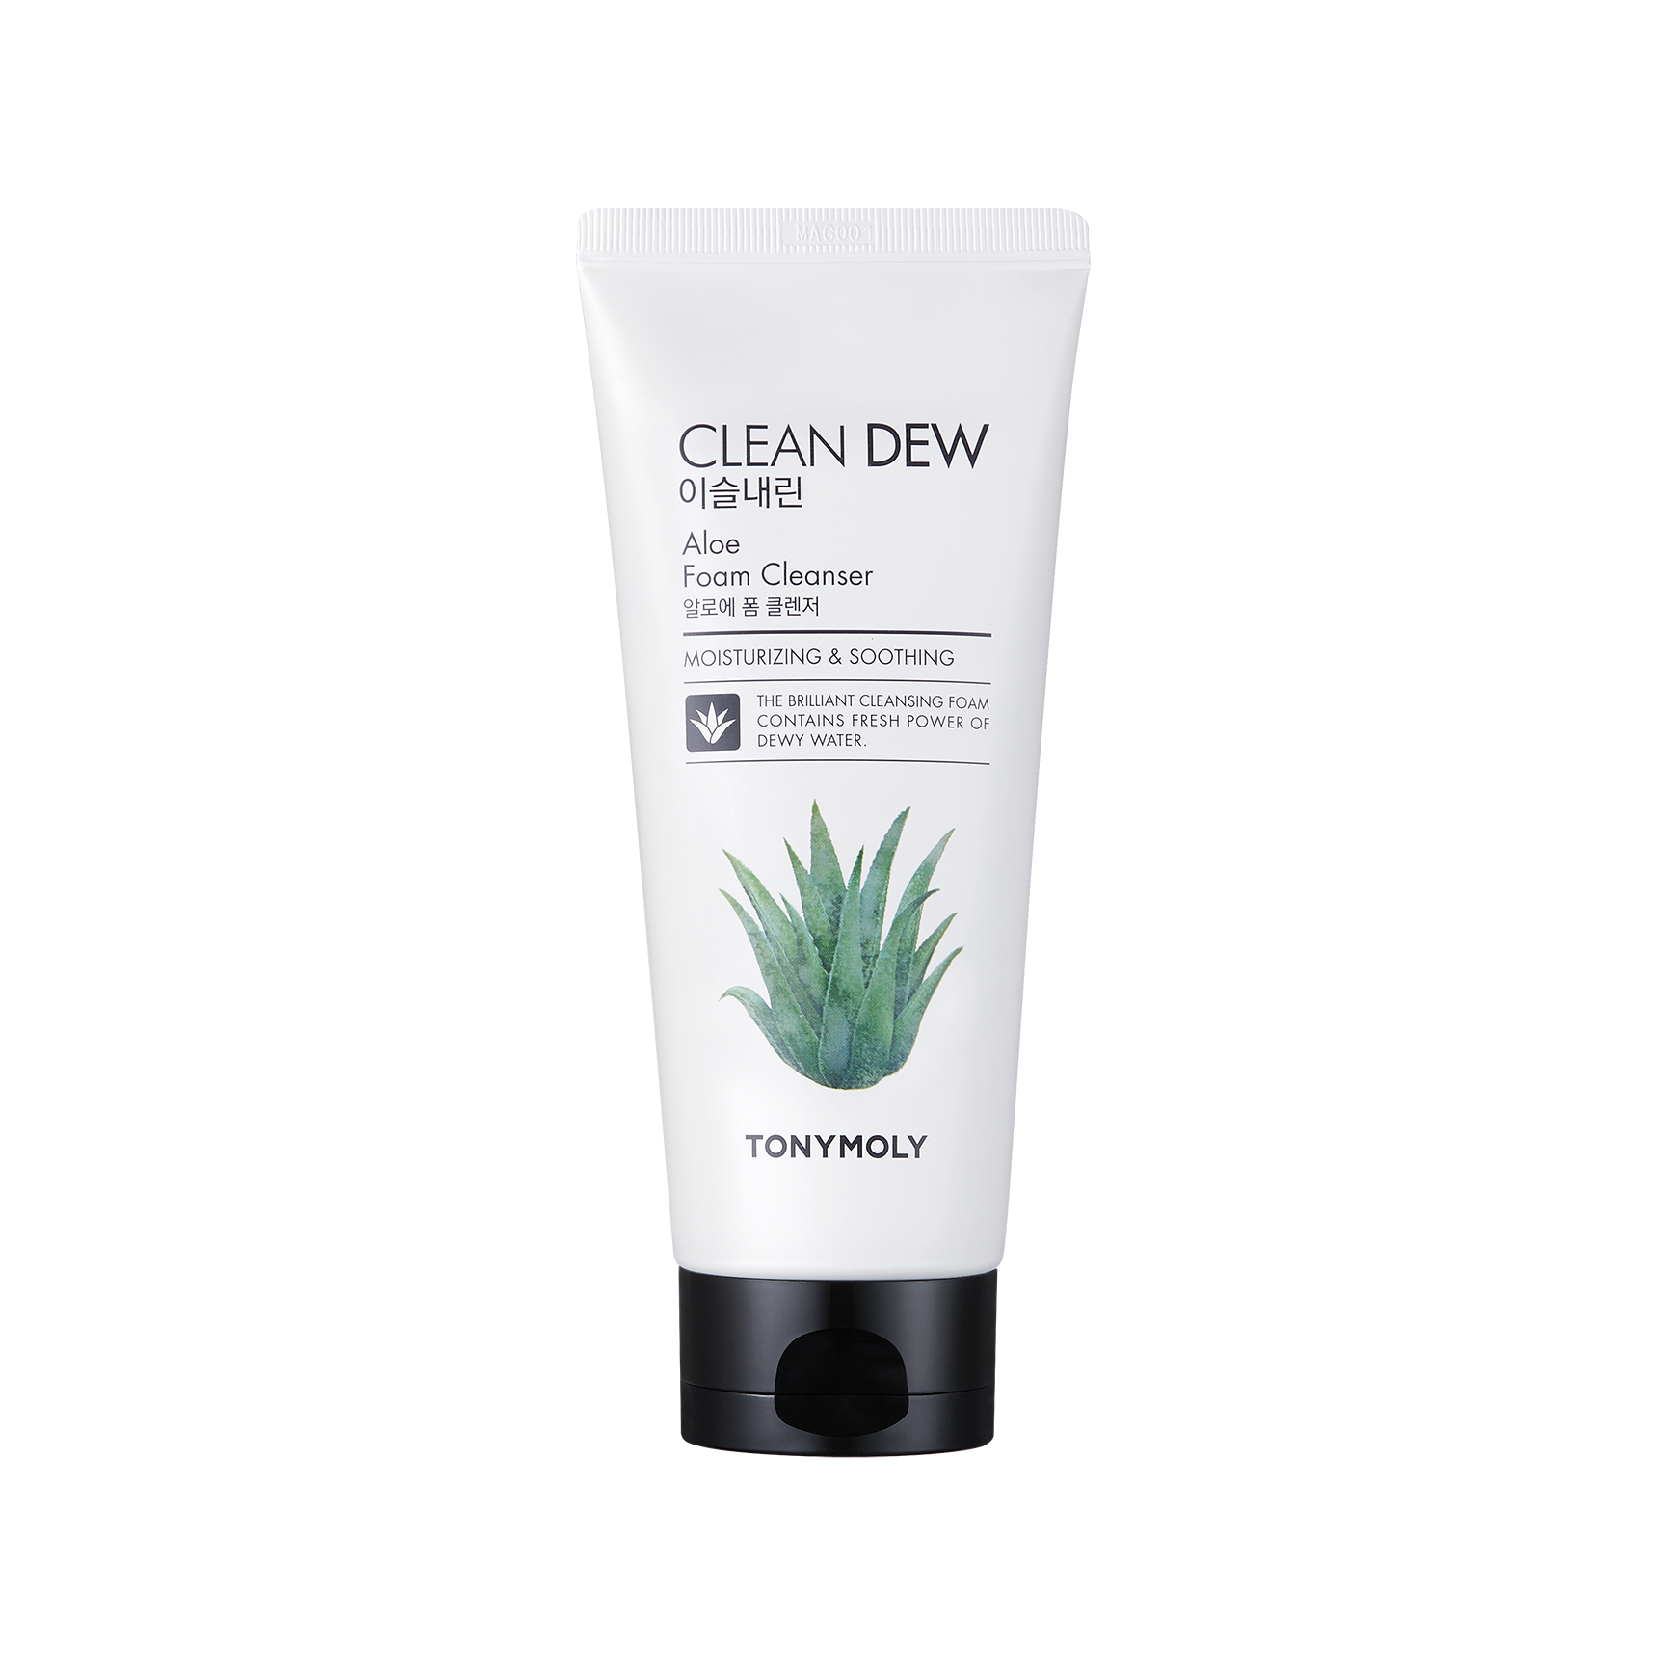 Clean Dew Foam Cleanser - Aloe